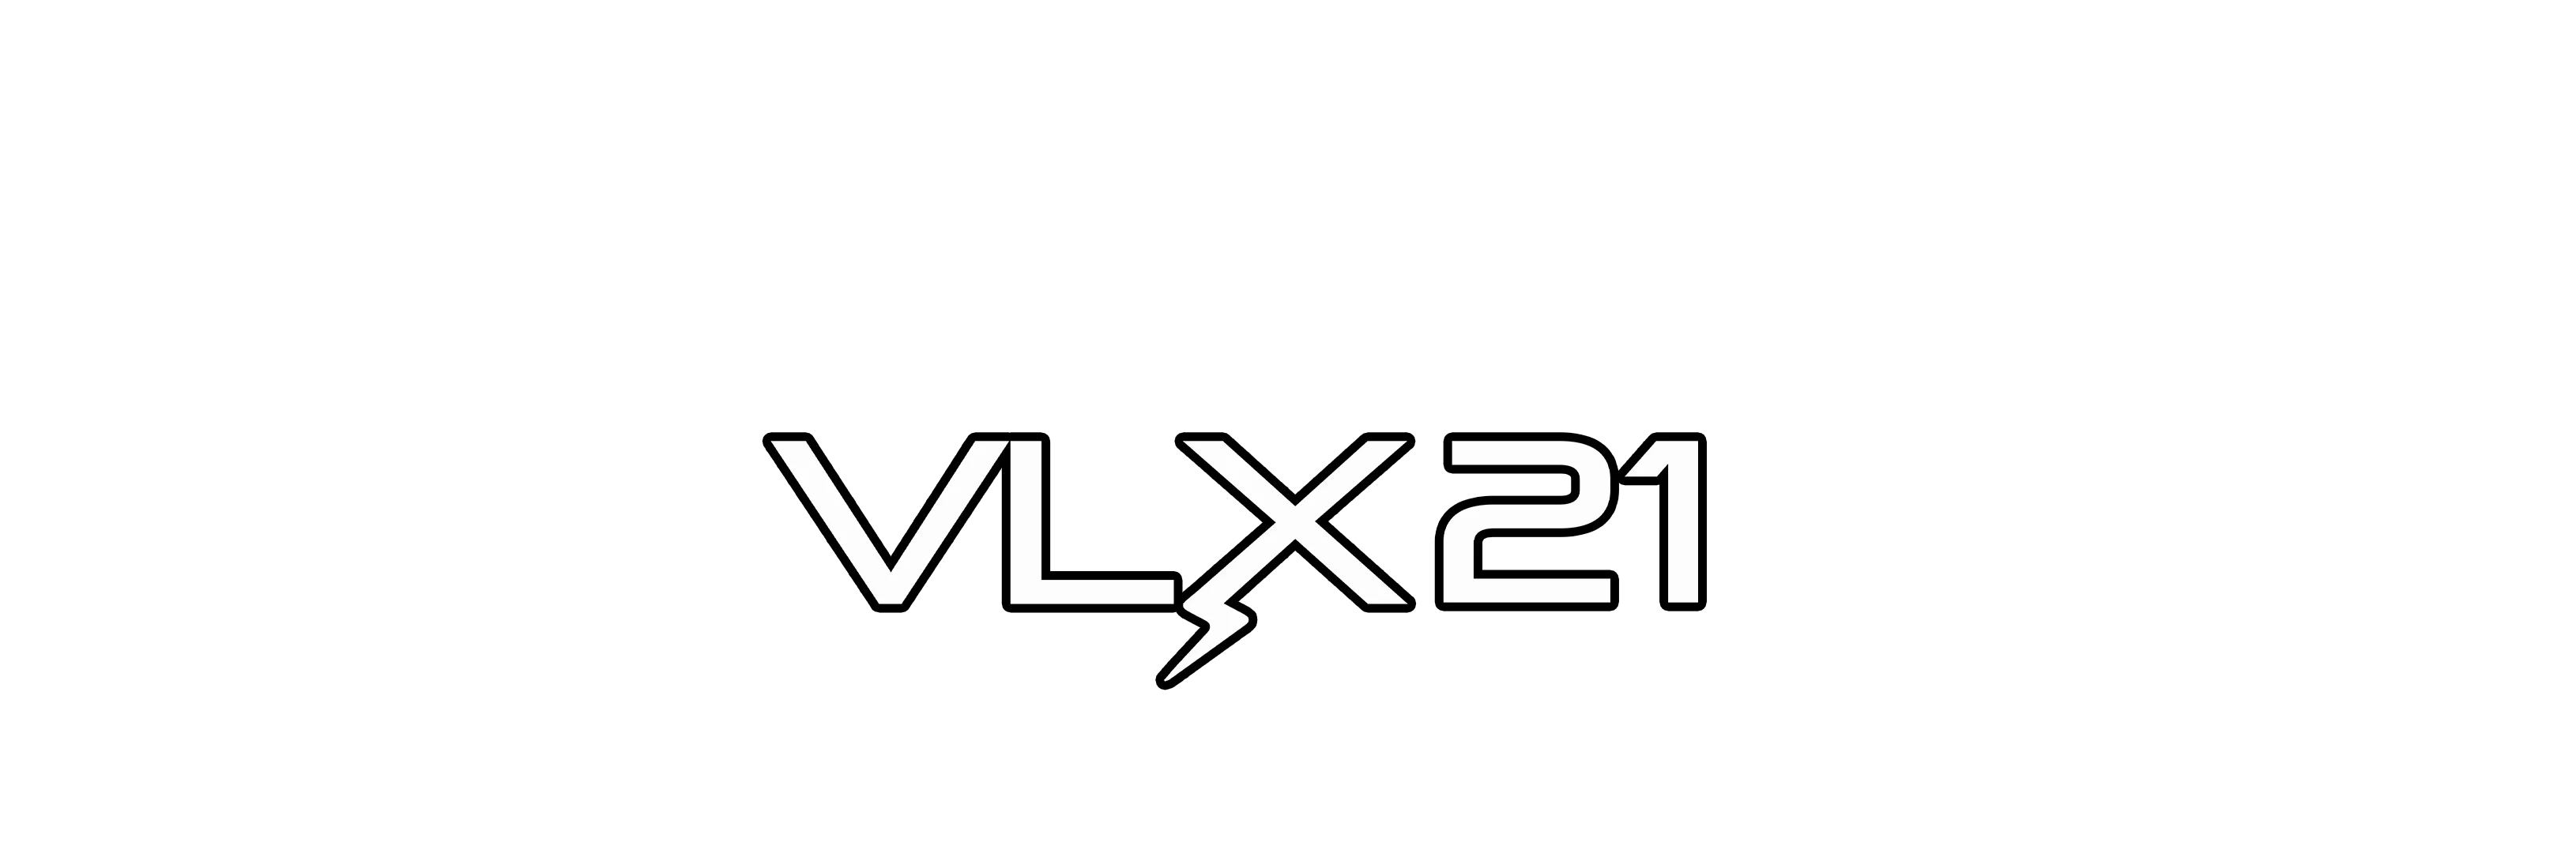 iKon VLX21